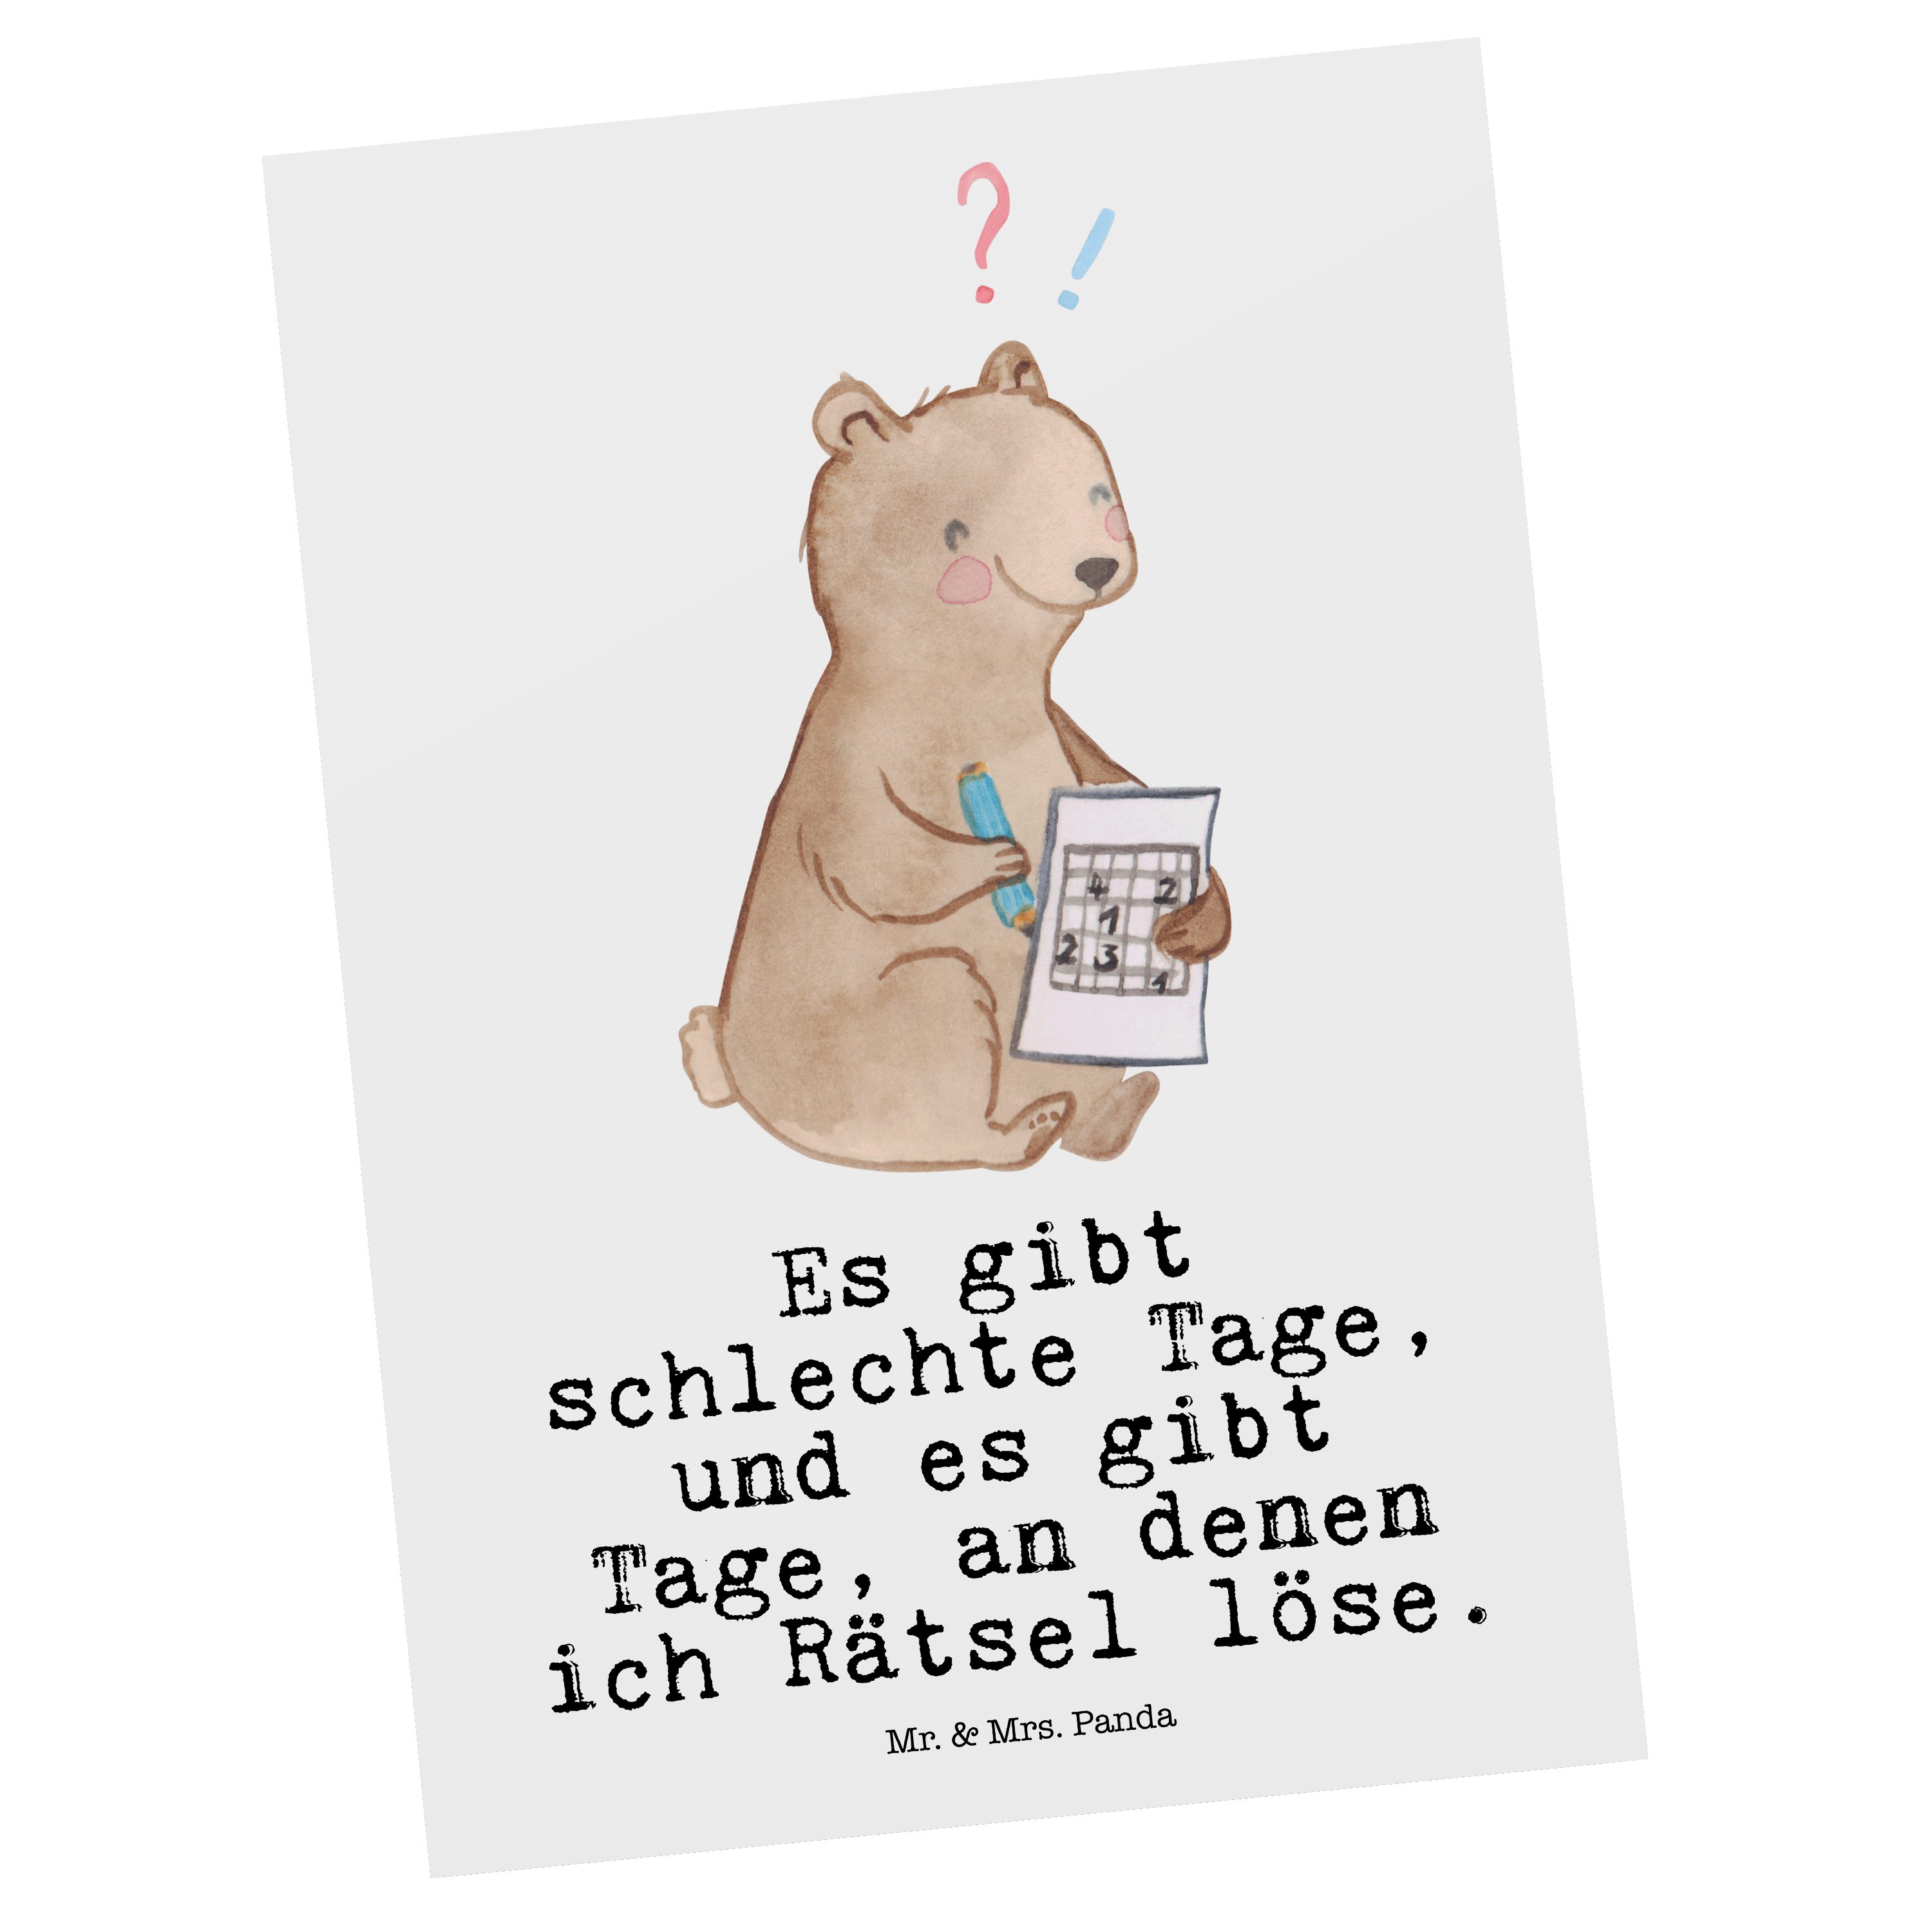 Mr. & Mrs. Panda Postkarte Bär Rätsel lösen Tage - Weiß - Geschenk, Geburtstagskarte, Schenken